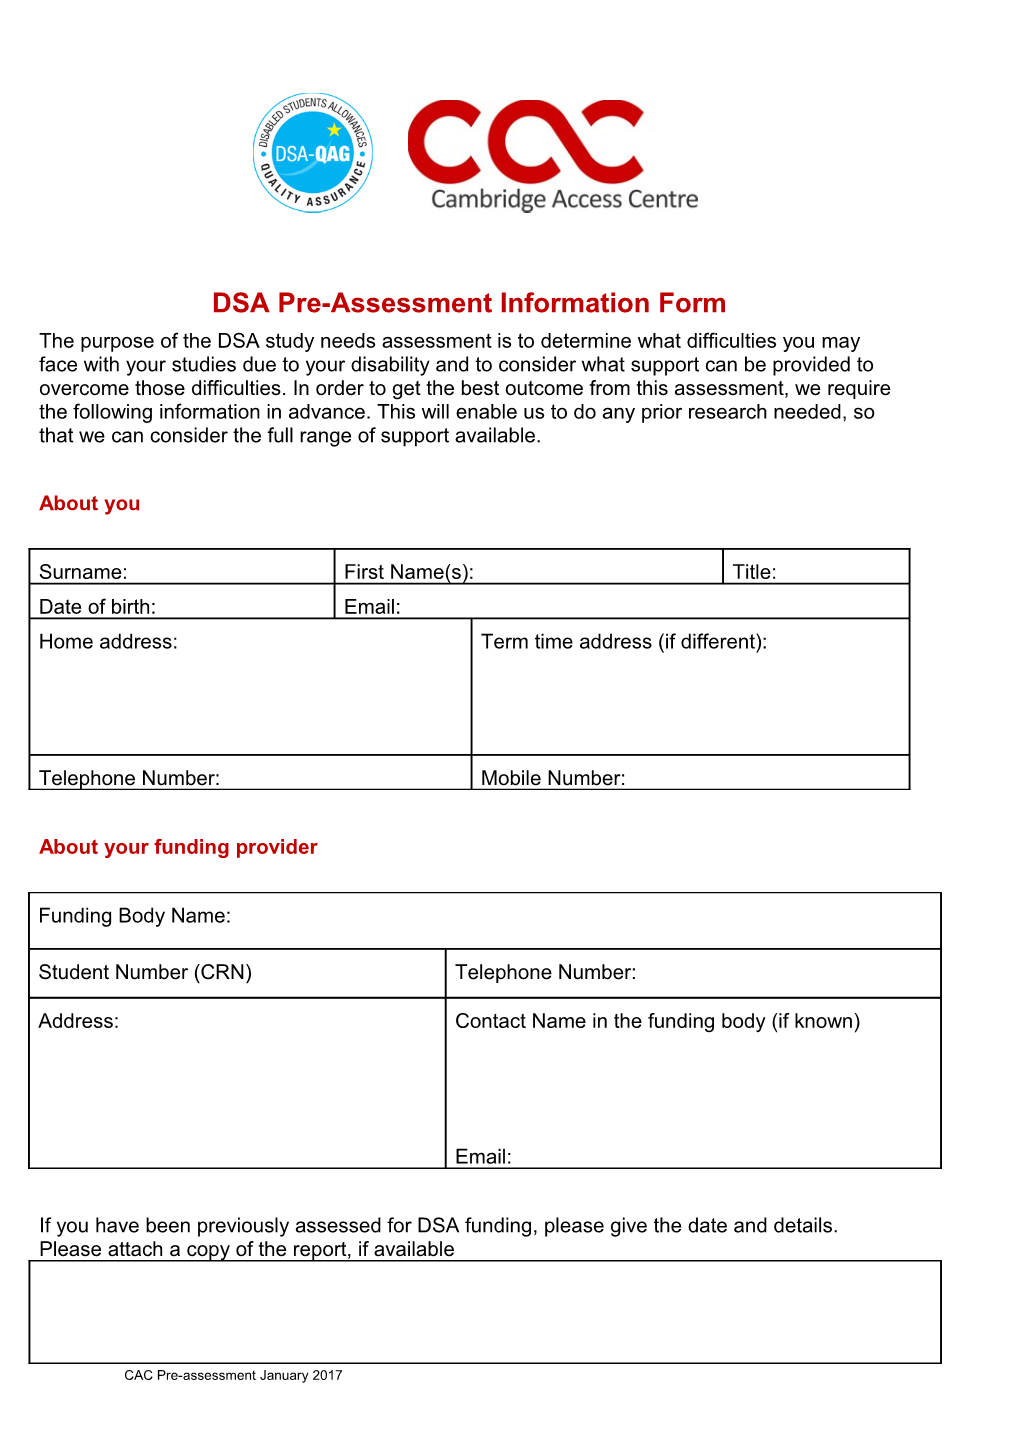 DSA Pre-Assessment Information Form